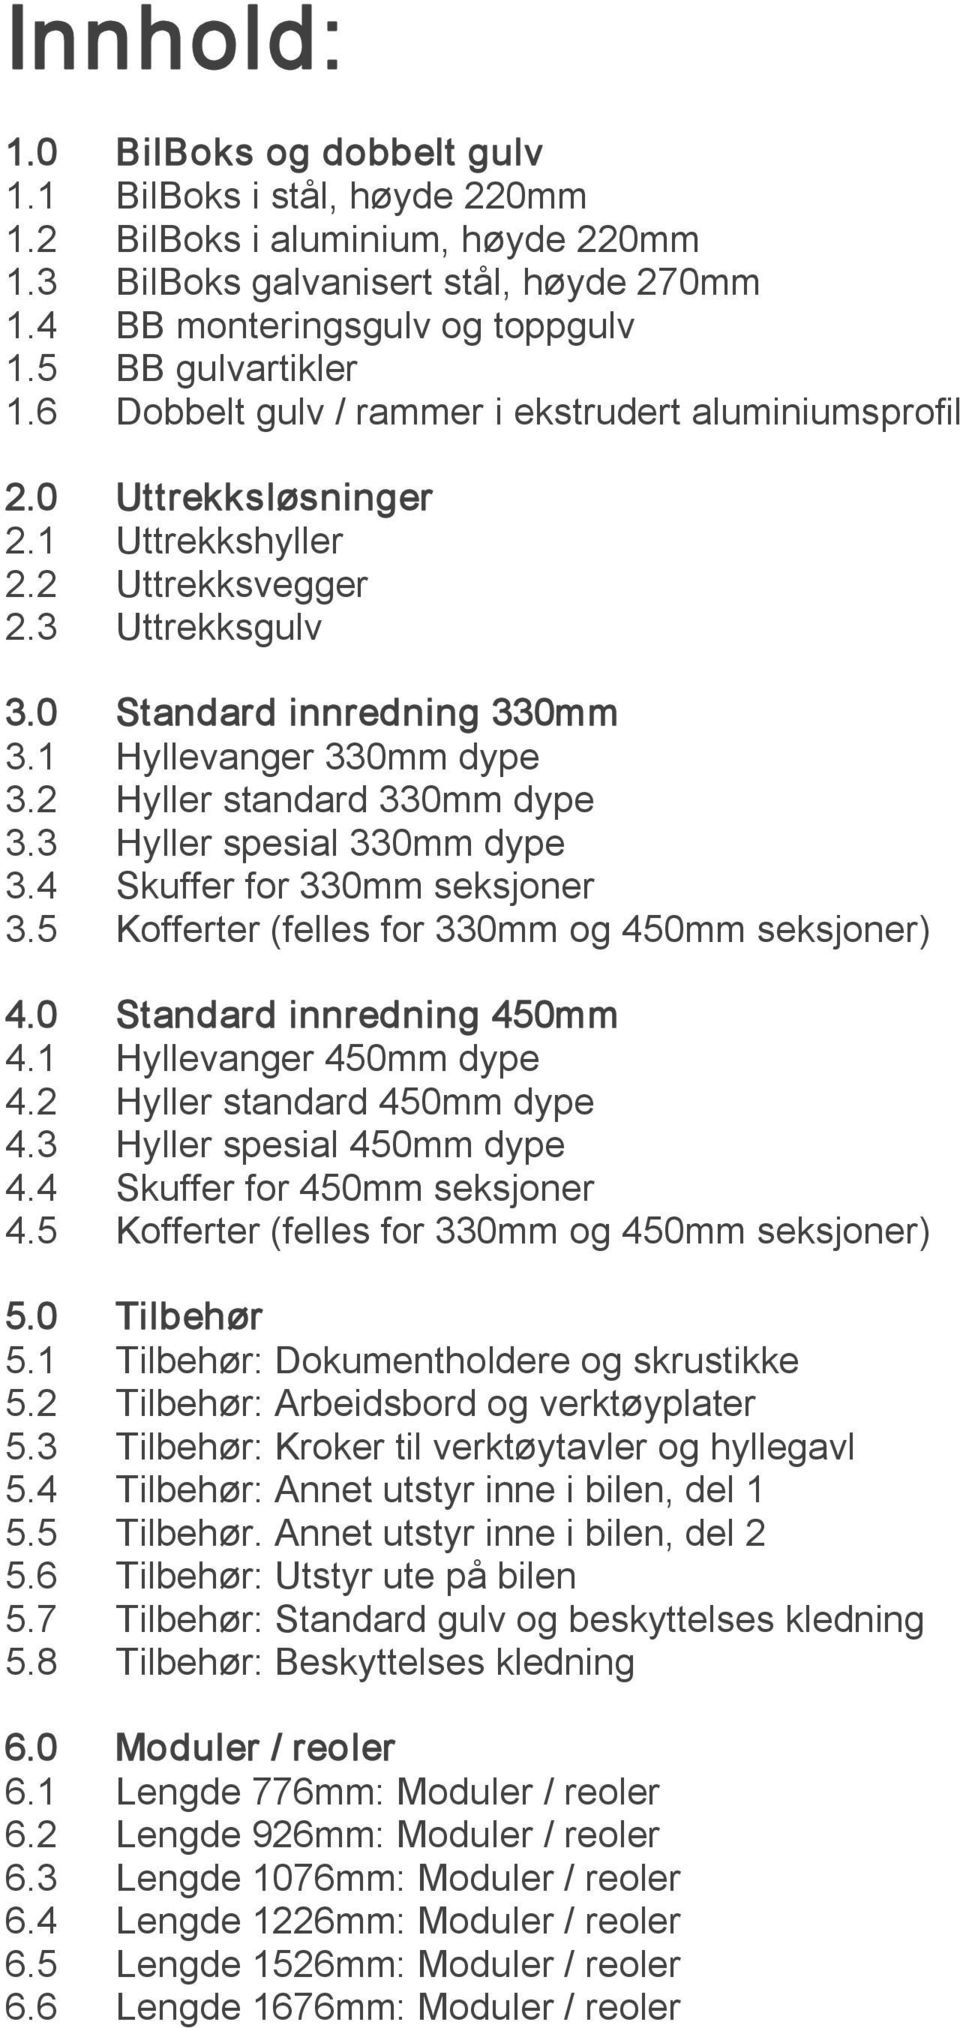 1 Hyllevanger 330mm dype 3.2 Hyller standard 330mm dype 3.3 Hyller spesial 330mm dype 3.4 Skuffer for 330mm seksjoner 3.5 Kofferter (felles for 330mm og 450mm seksjoner) 4.